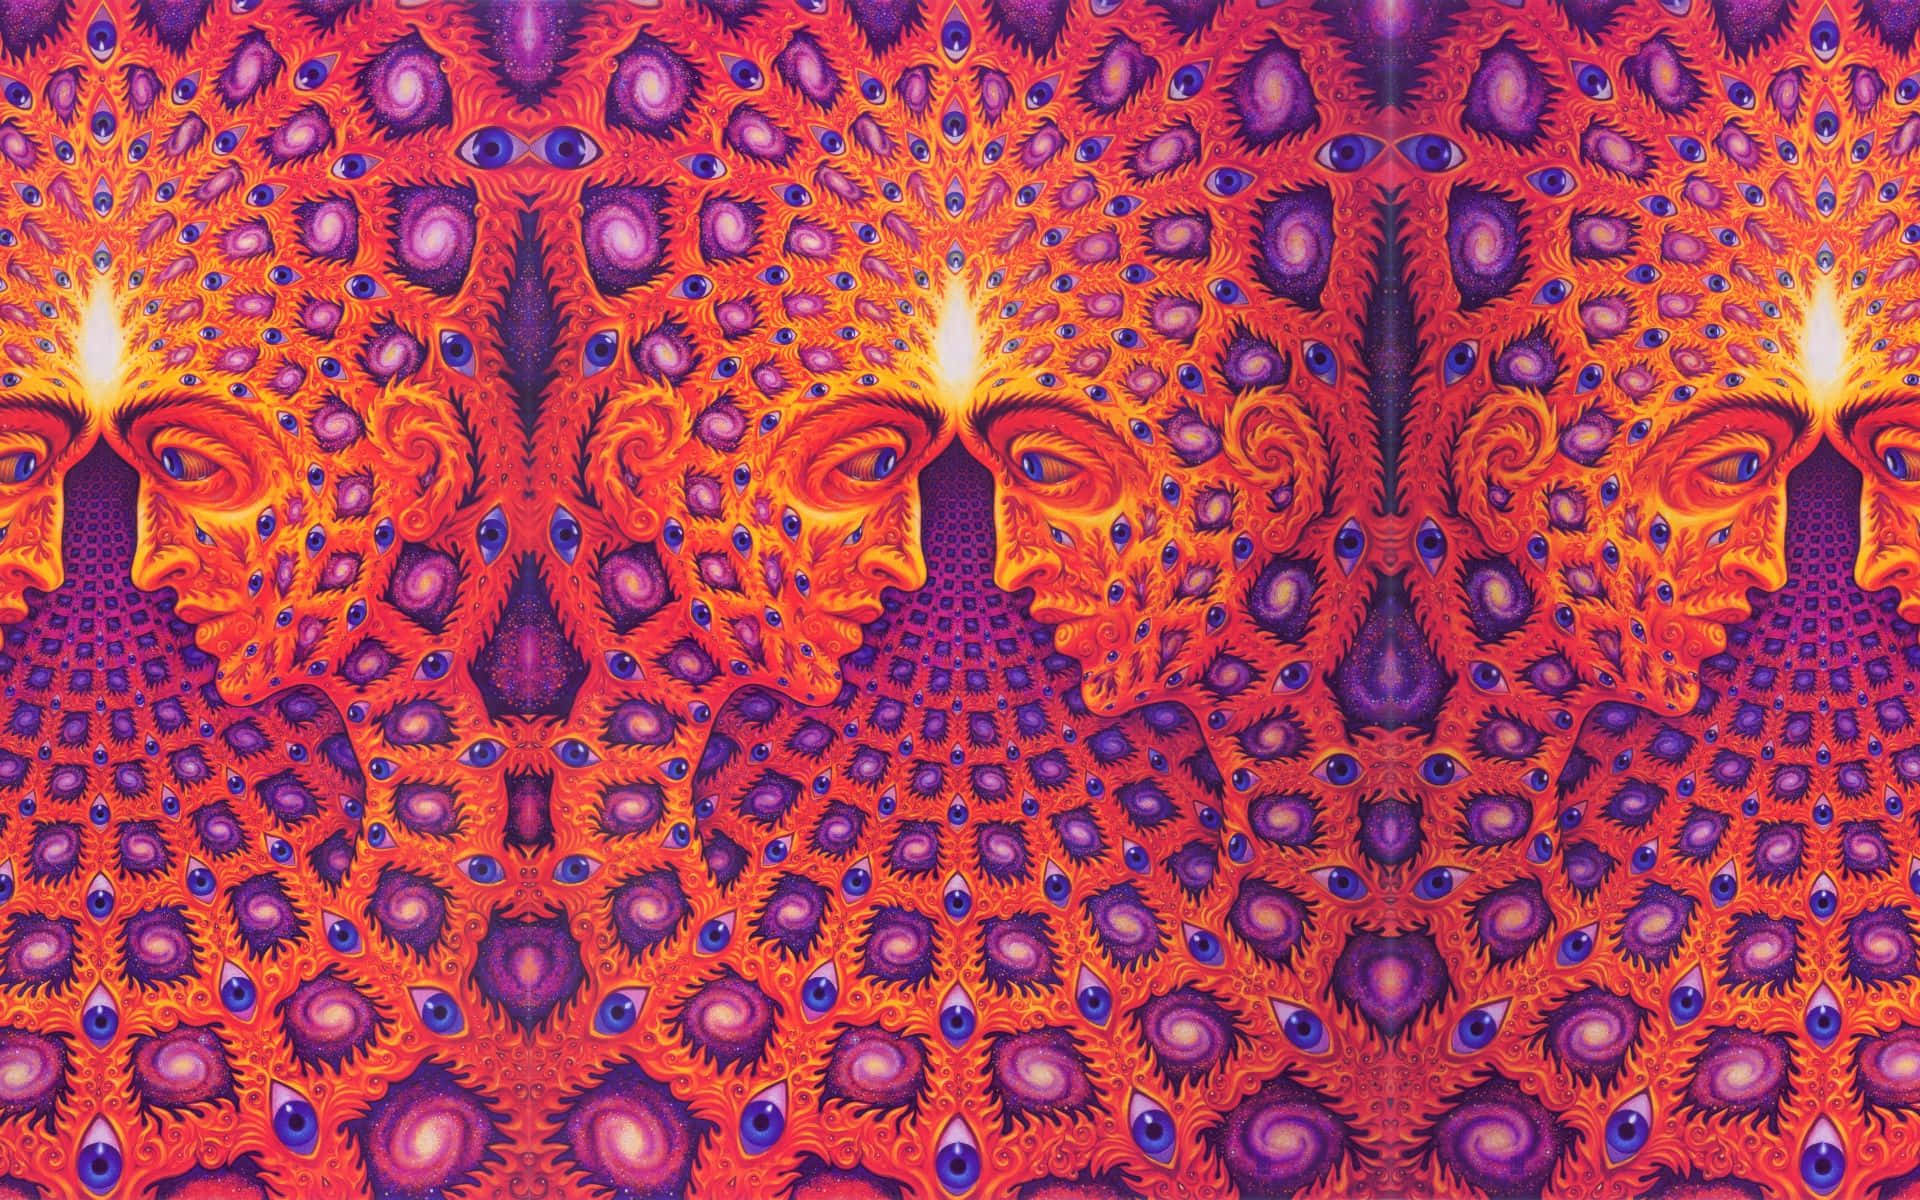 Einpsychedelisches Gemälde Mit Einem Pfau Darauf. Wallpaper